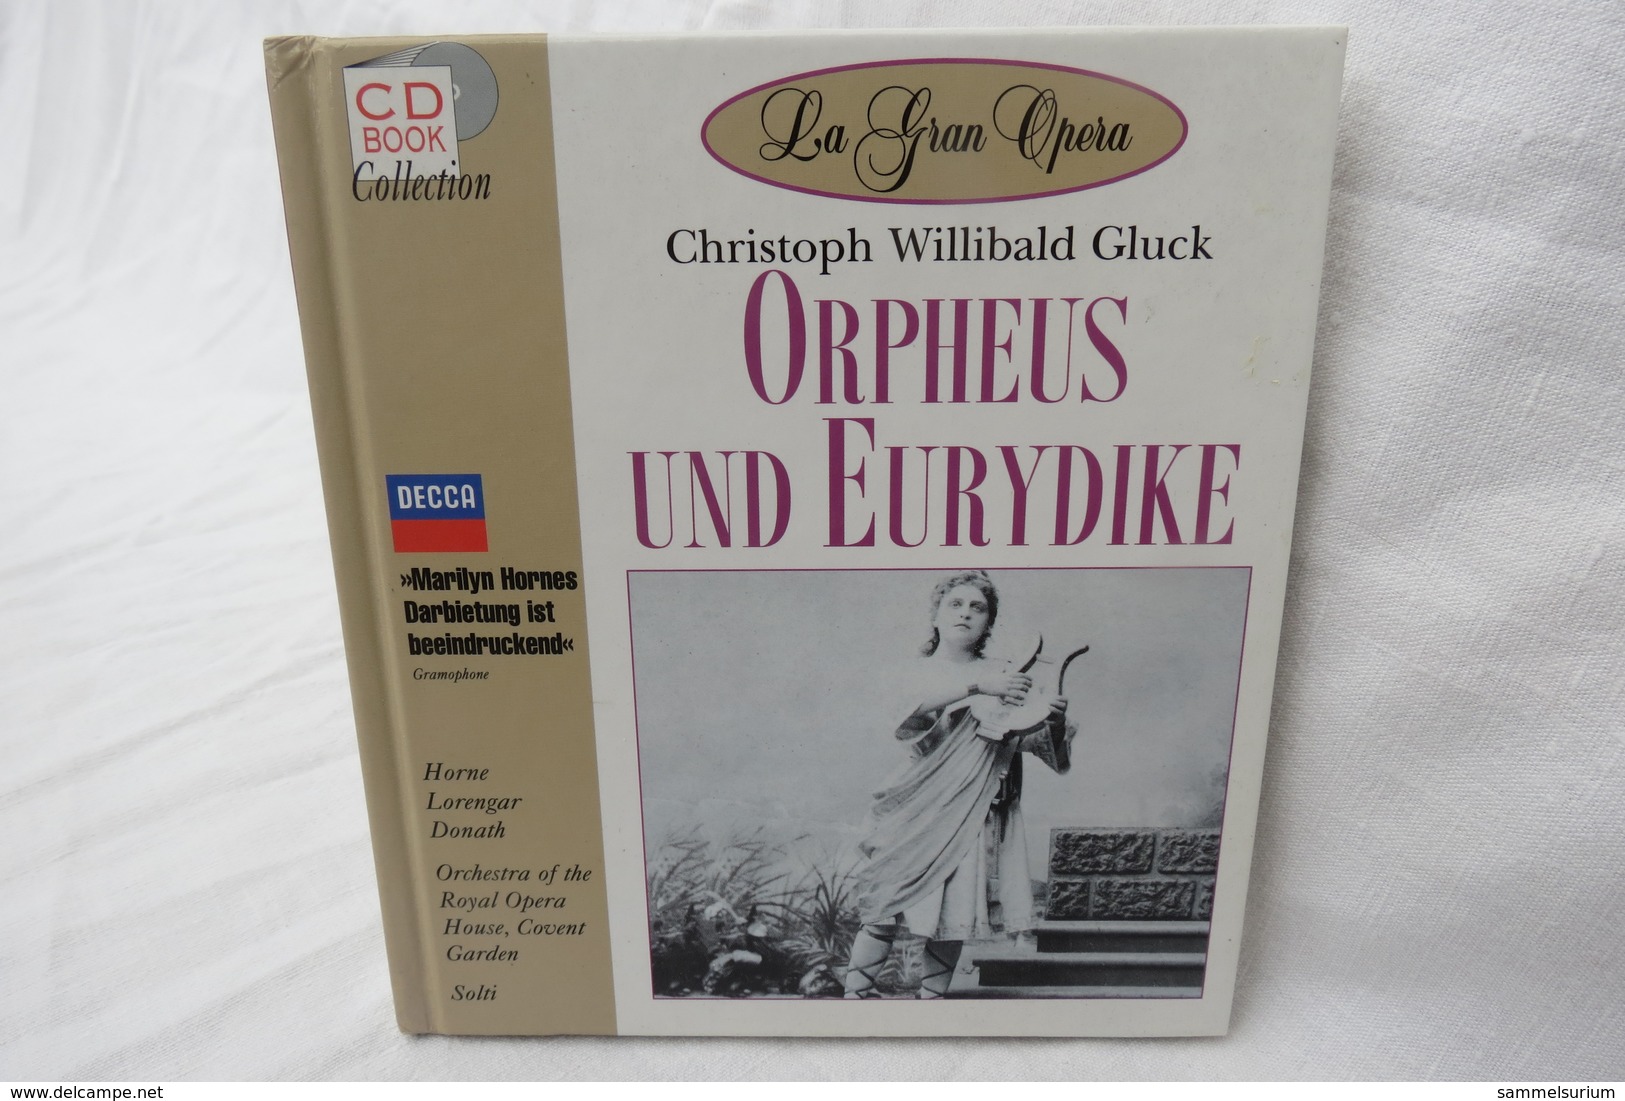 CD "Orpheus Und Eurydike / Christoph Willibald Gluck" Mit Buch Aus Der CD Book Collection (gepflegter Zustand) - Opera